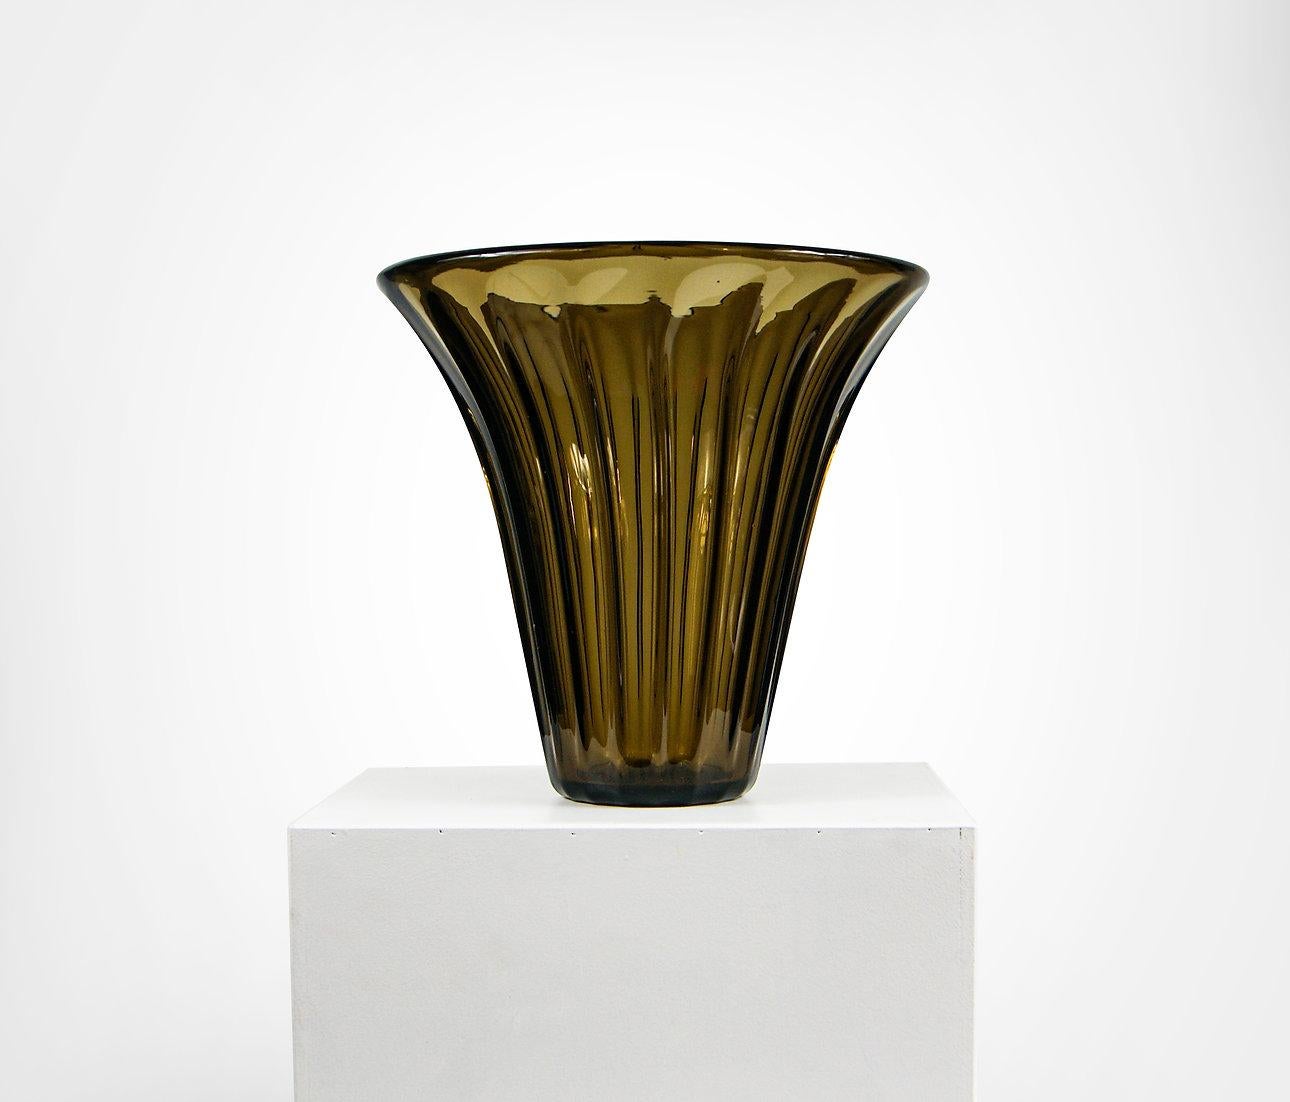 Vase en cristal ambré Art Déco de Daum Nancy France.
Spectaculaire vase en verre ambré à parois épaisses.
De grande taille, idéal pour les fleurs ou comme centre de table décoratif.
Signé 